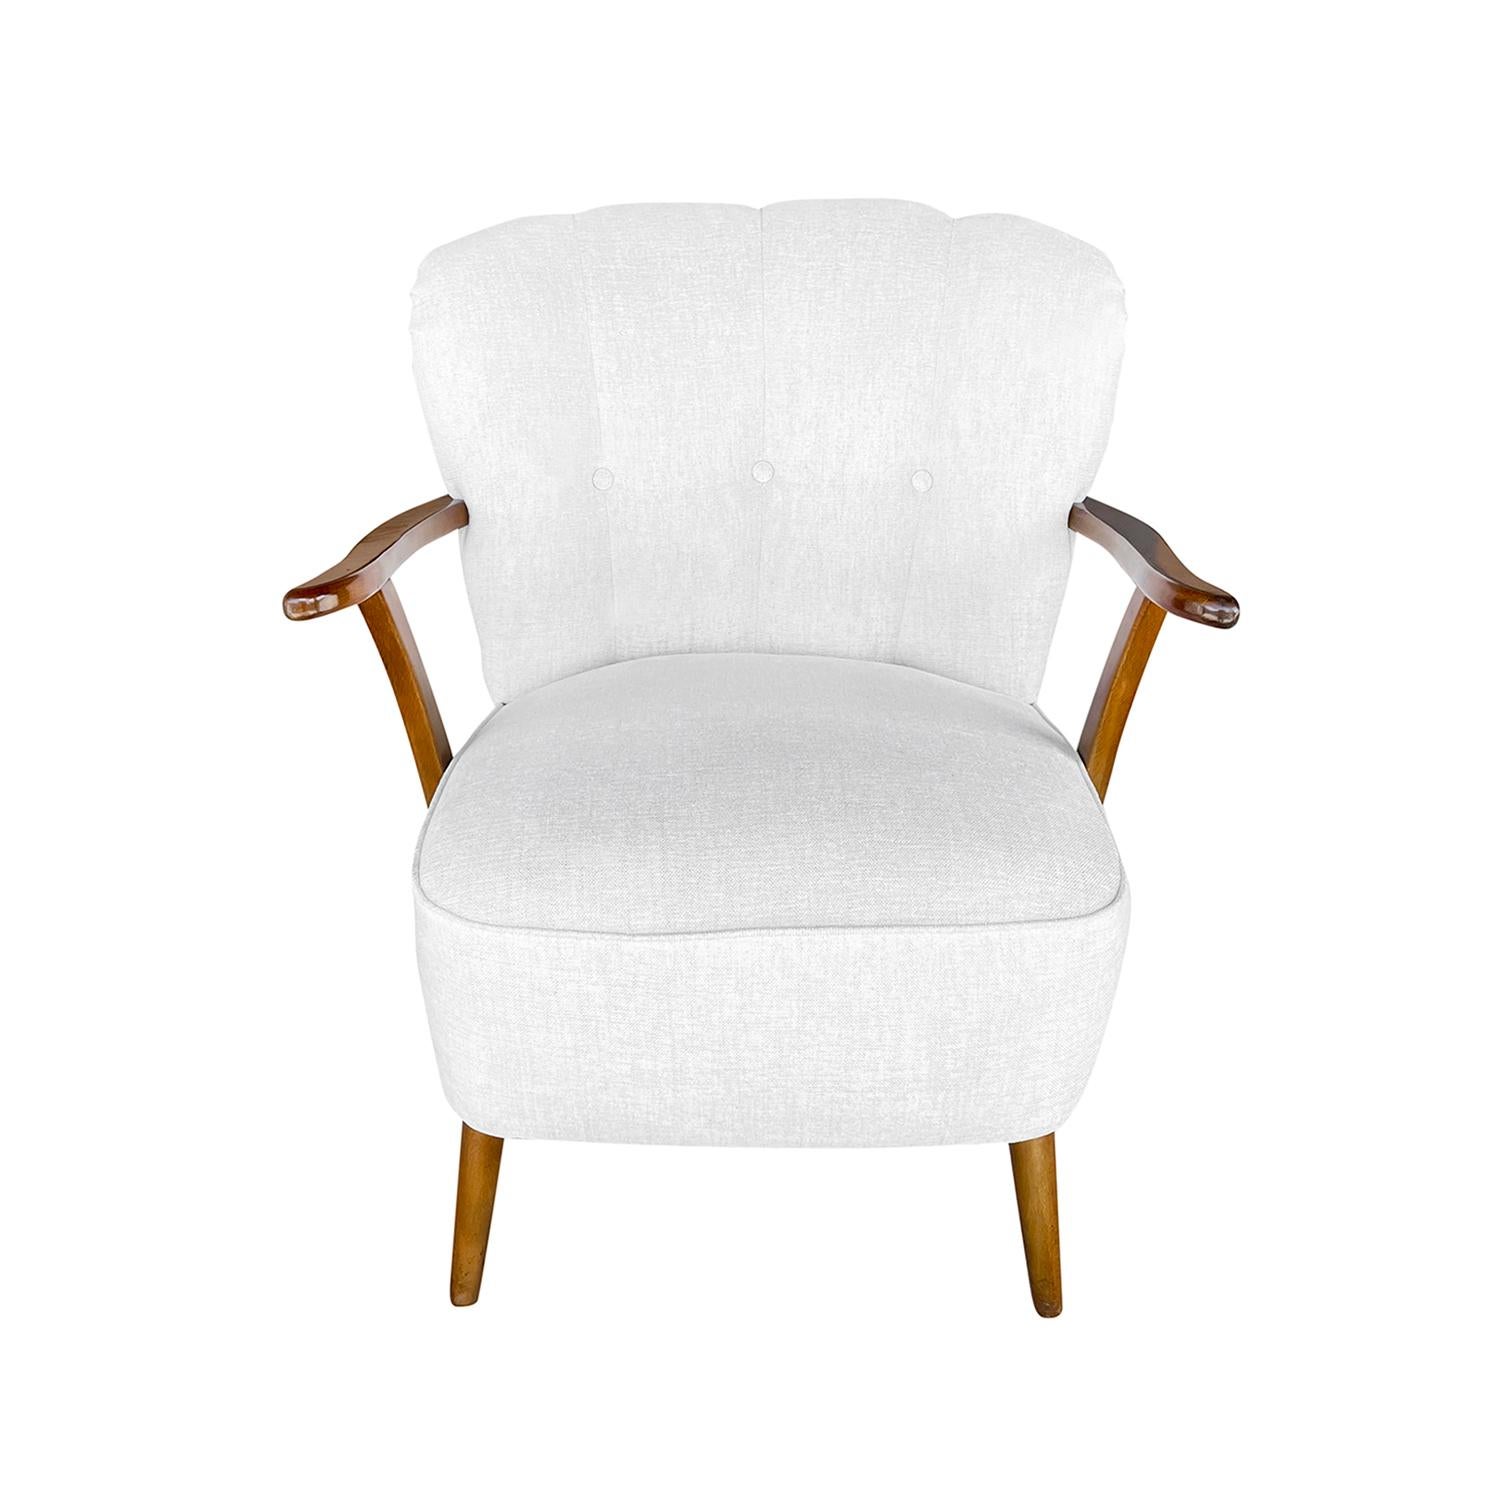 Ein kleiner dänischer Art Deco Sessel aus handgeschnitztem Buchenholz, mit Messingnagelköpfen, in gutem Zustand. Die Rückenlehne und die Armlehnen des skandinavischen Beistellstuhls sind geschwungen und werden von vier runden Holzfüßen getragen. Neu